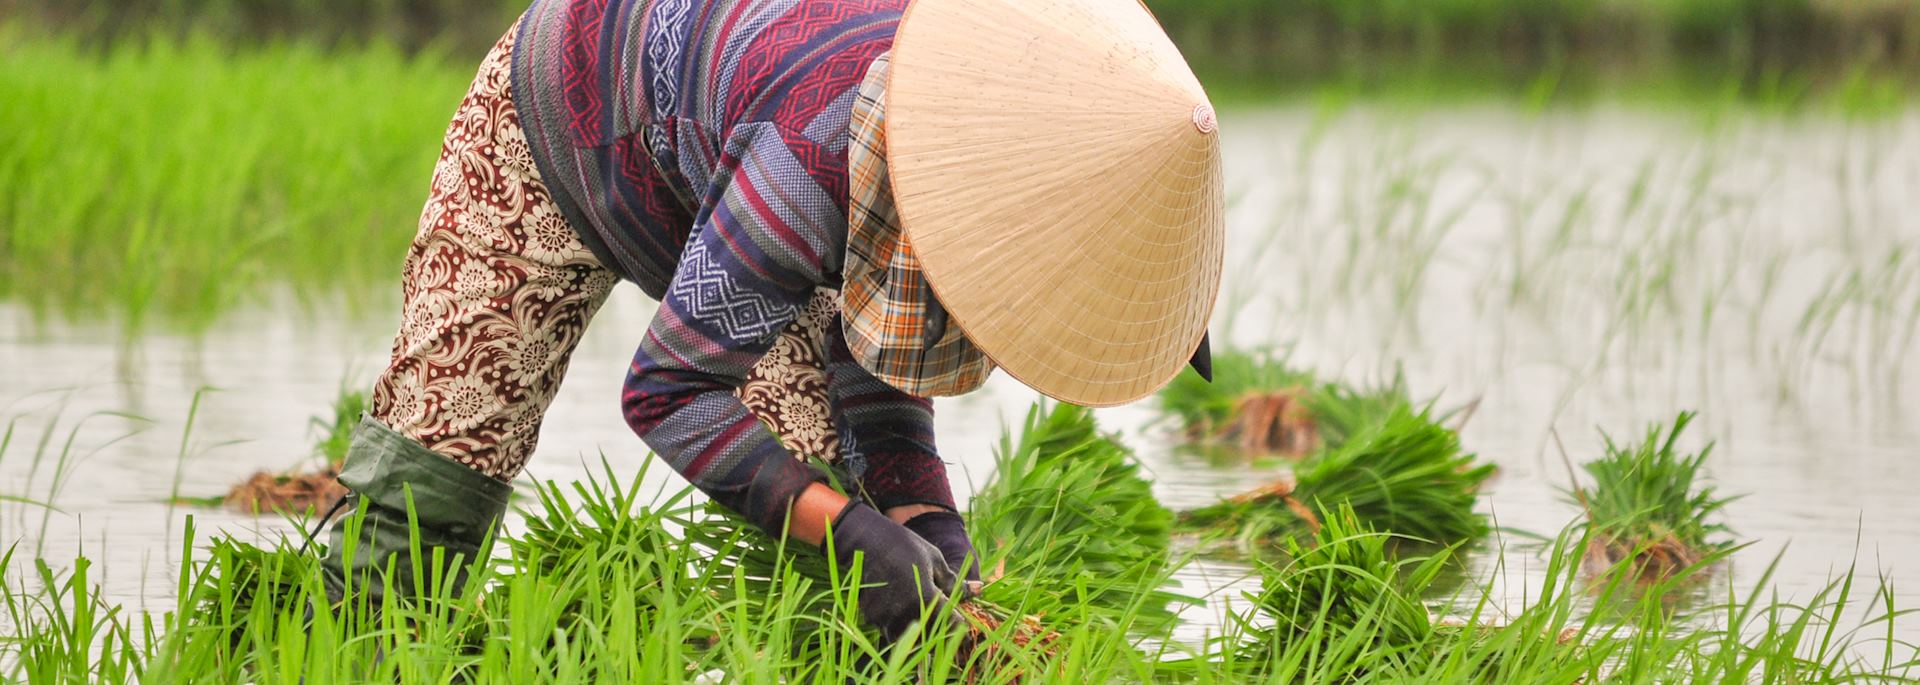 Rice farming in Hoi An